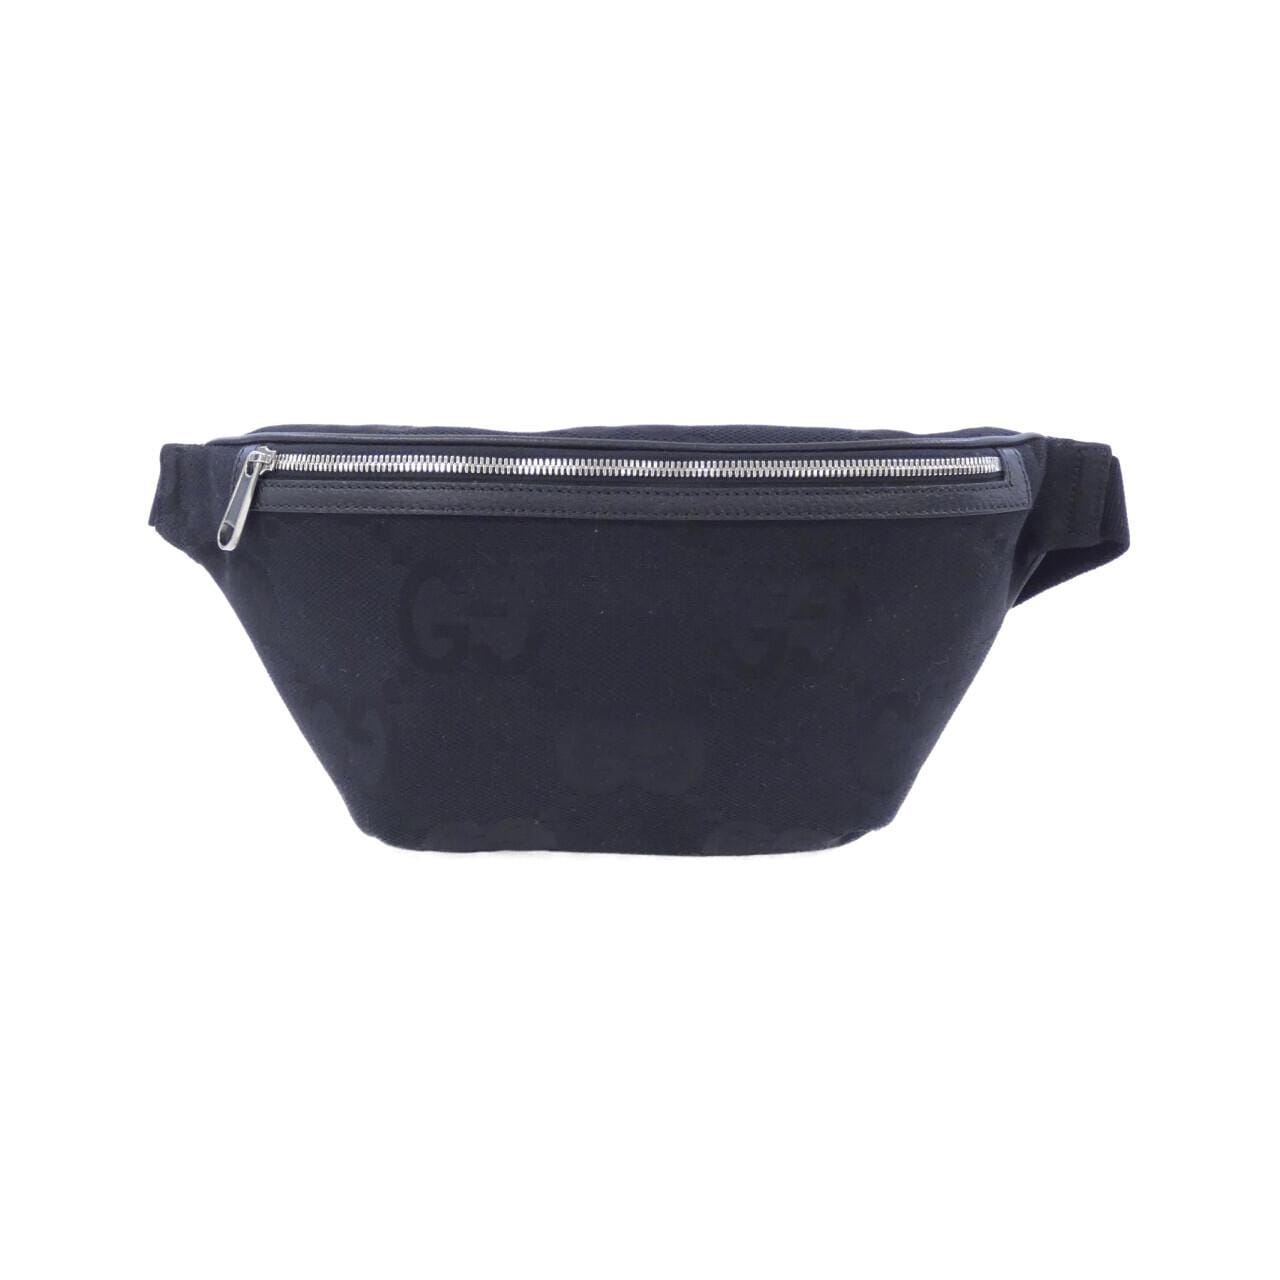 [BRAND NEW] Gucci 696031 FABRP waist bag